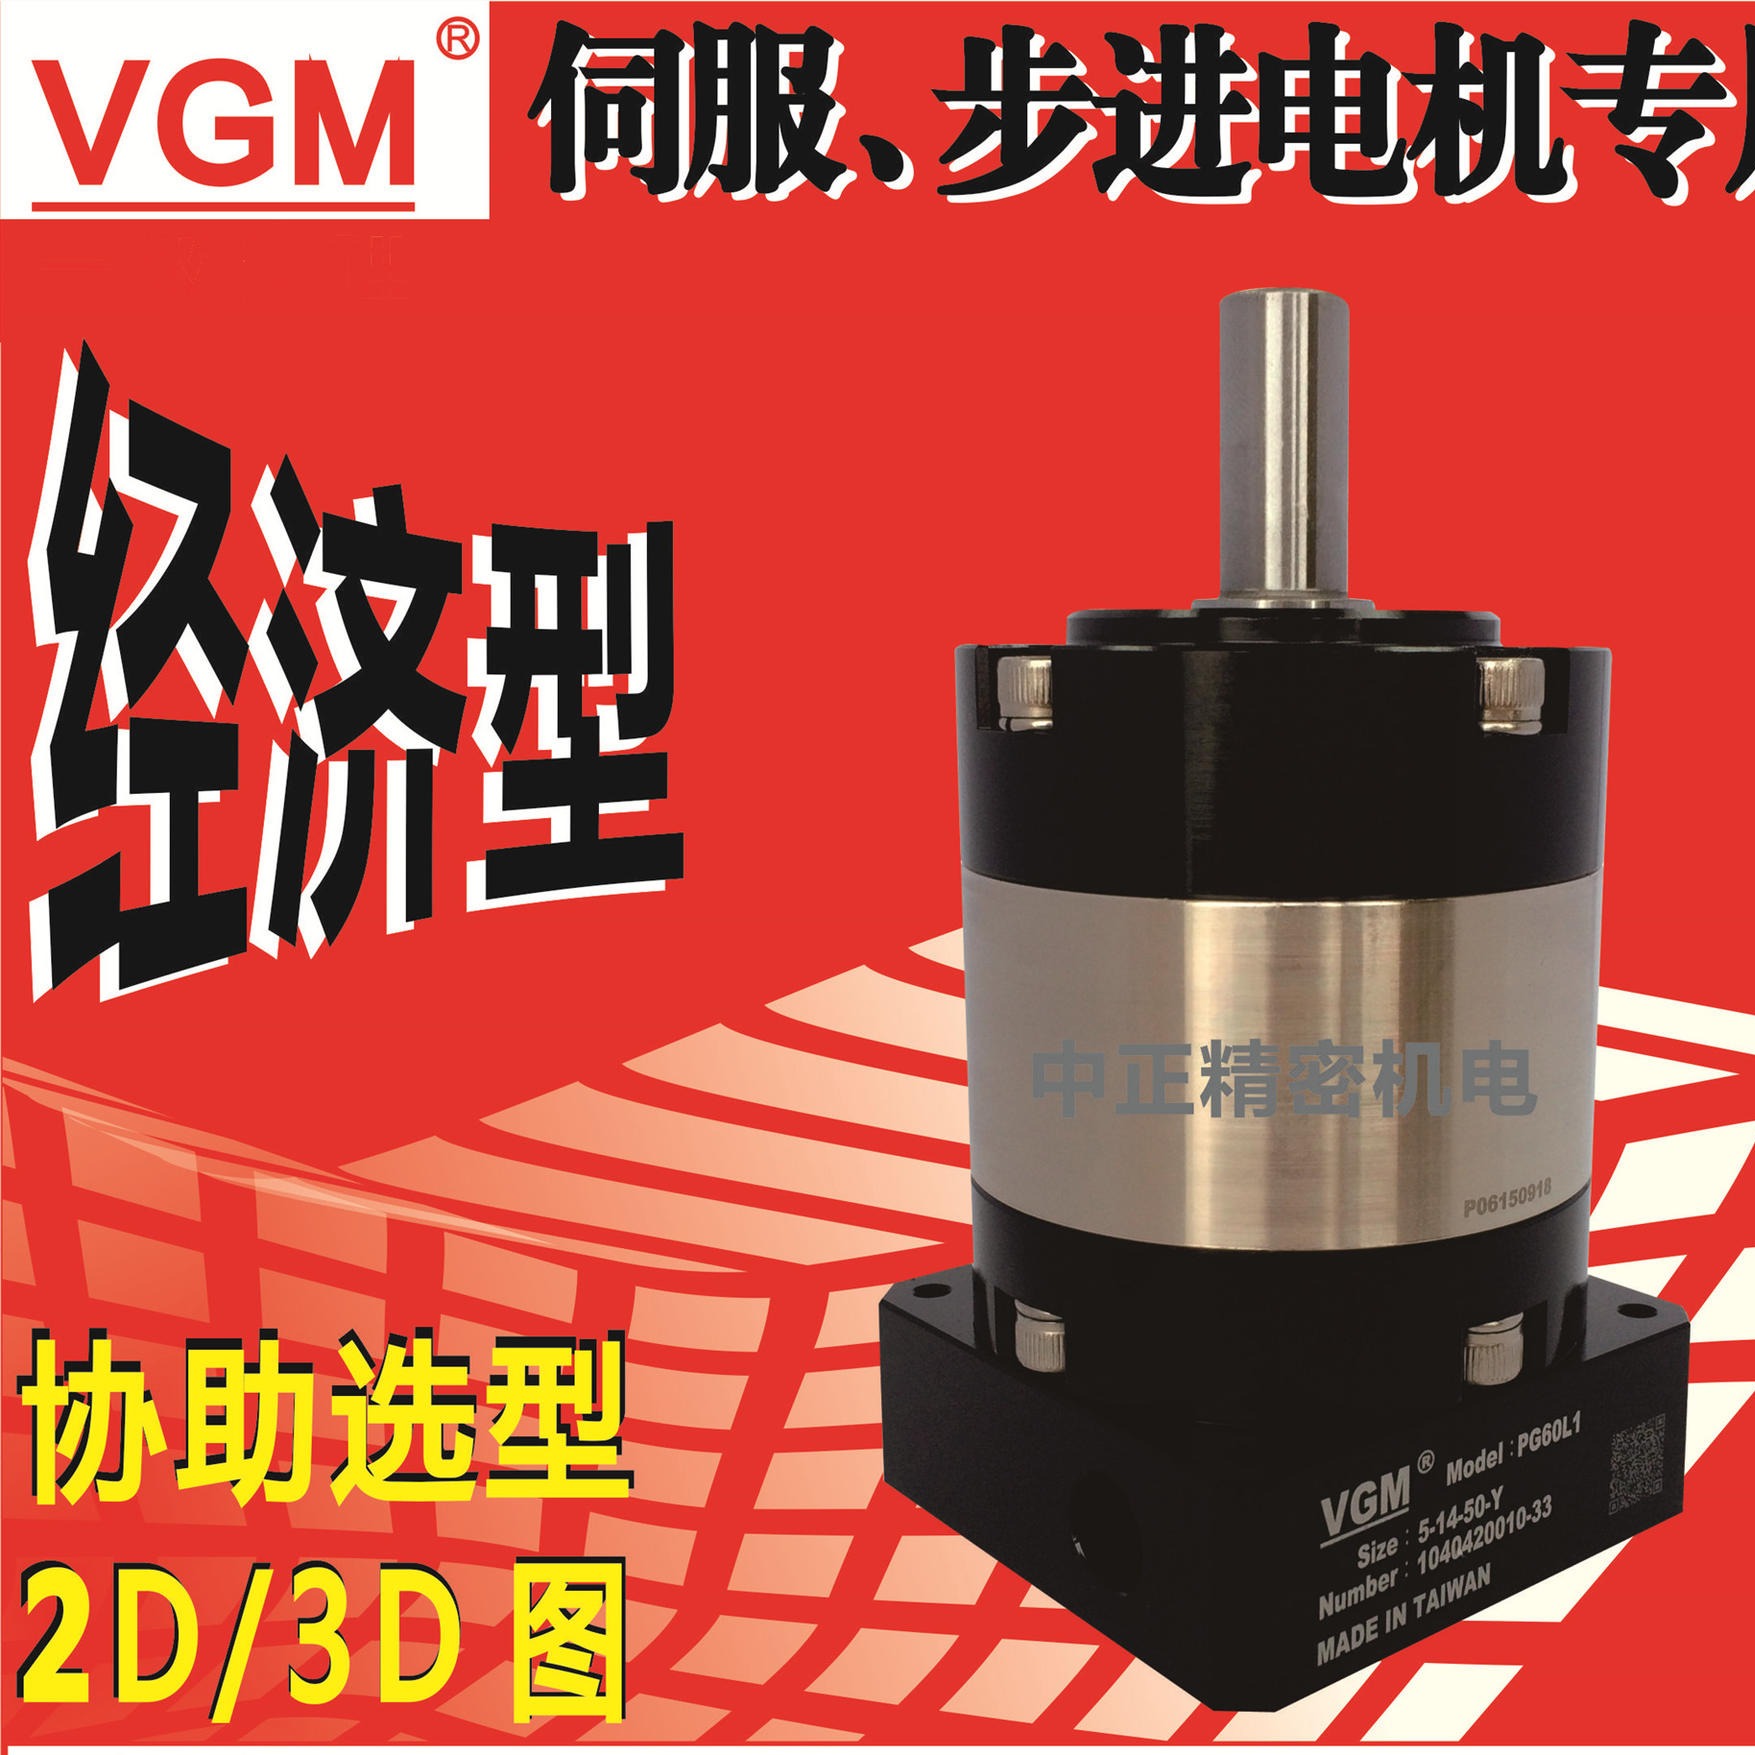 三菱750W伺服电机HG-KN73J-S100配套台湾VGM减速机PG90L1-5-19-70高精度行星减速器